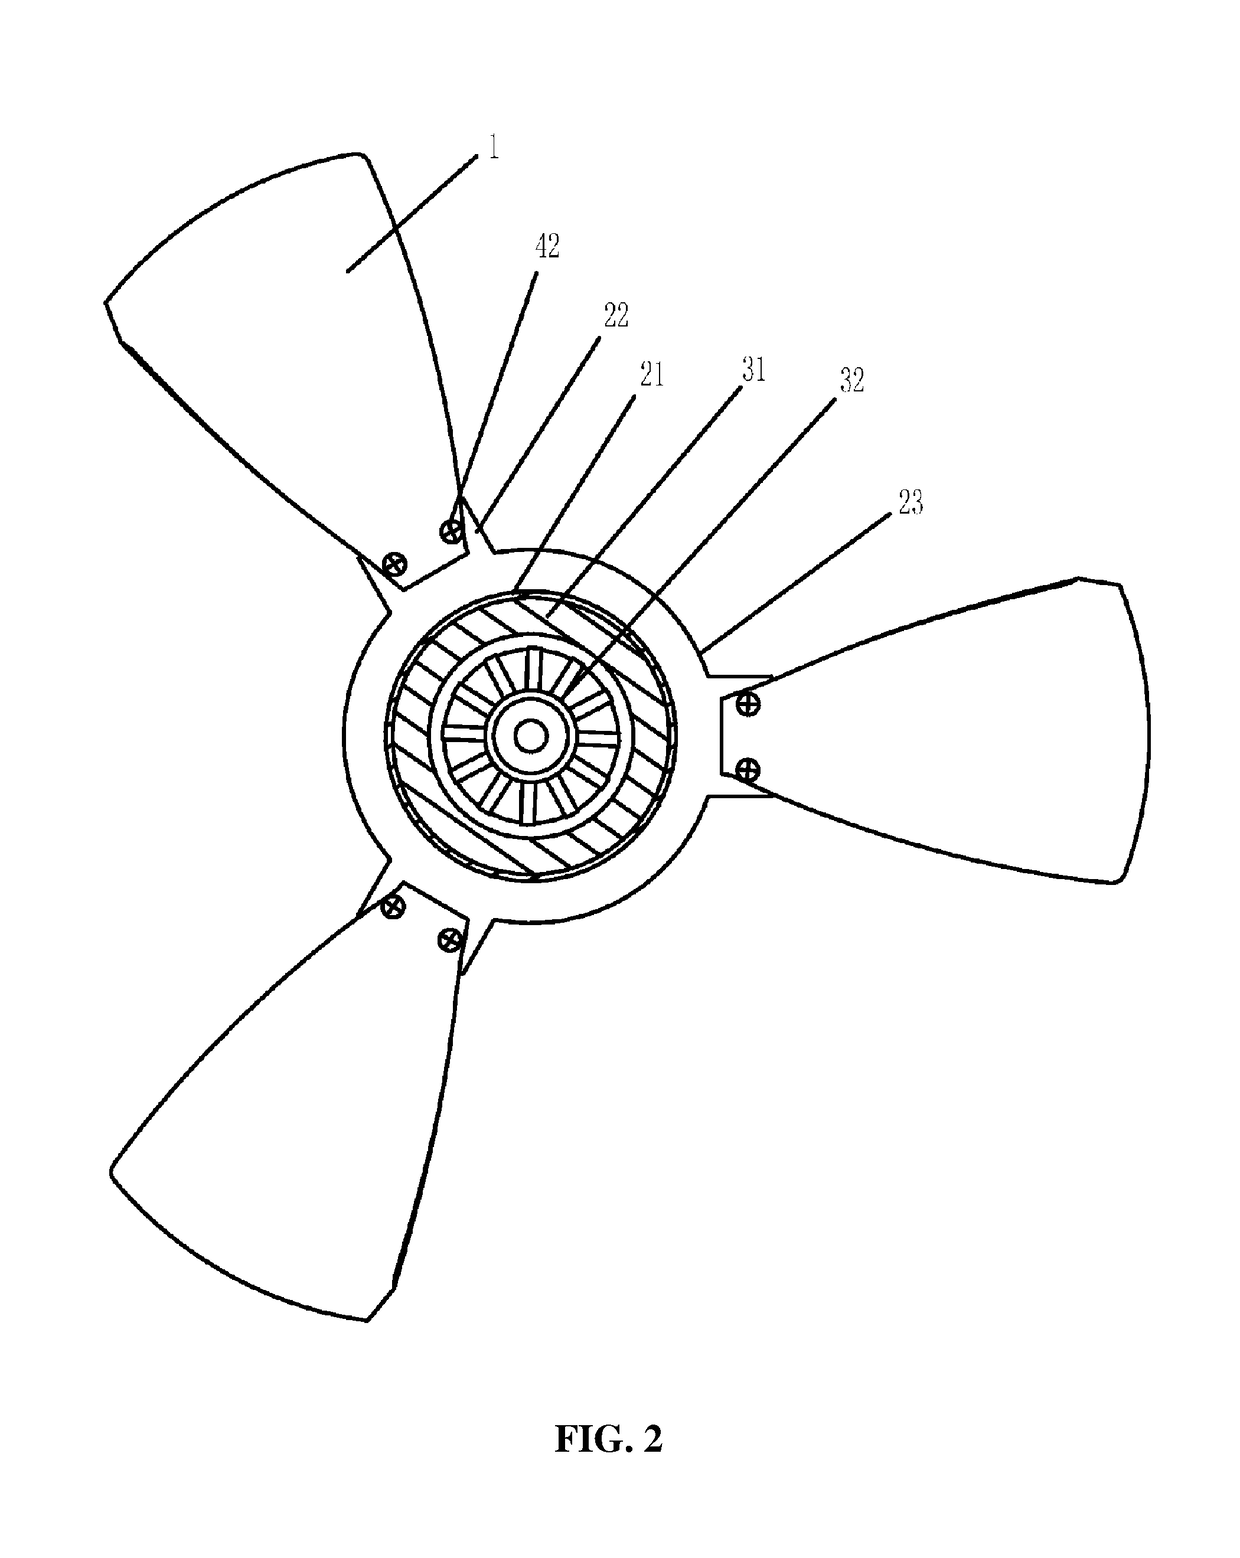 Fan system having an external rotor